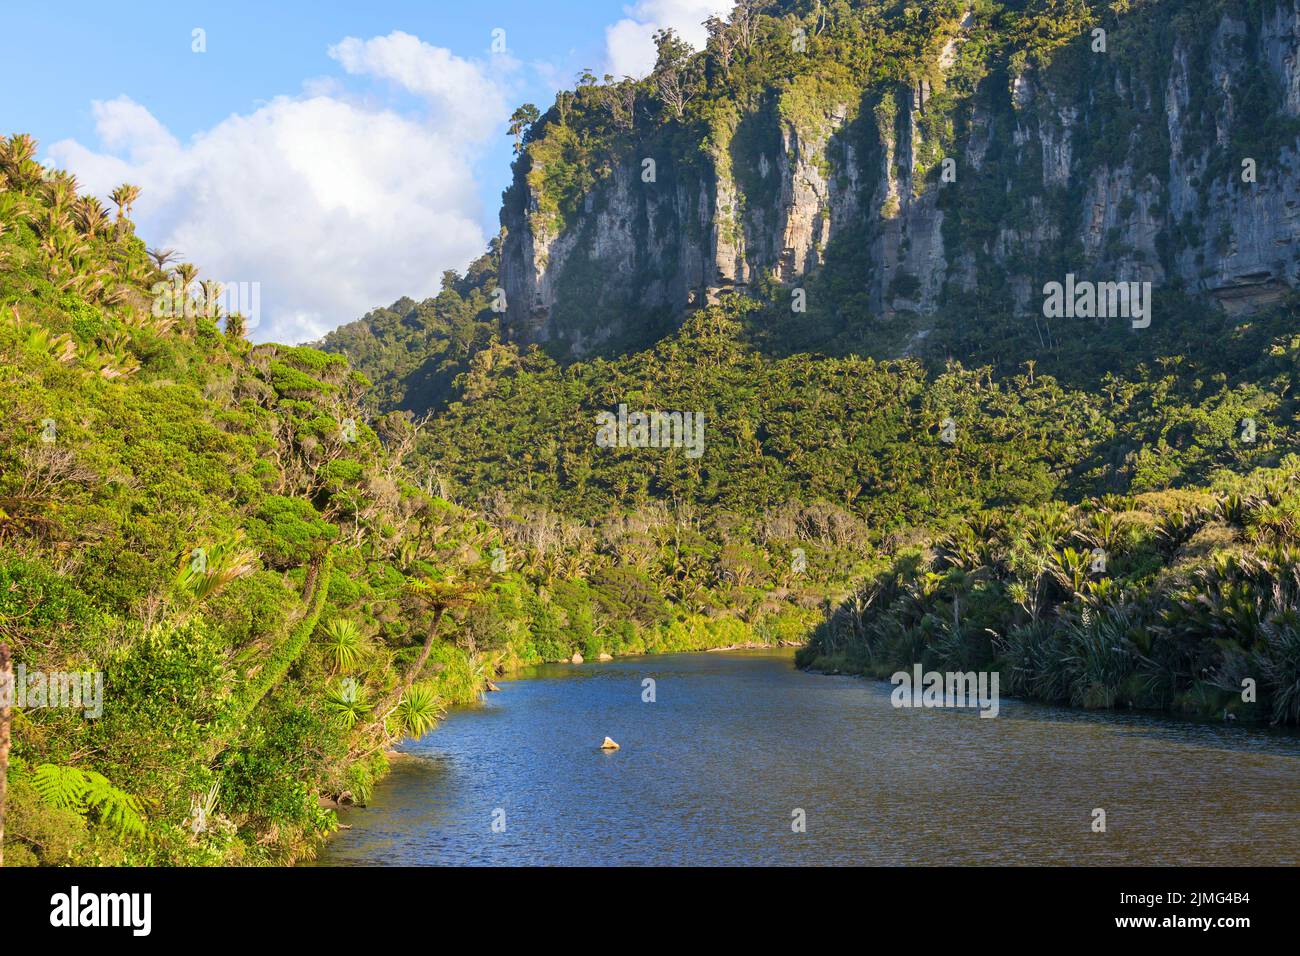 New Zealand landscapes Stock Photo